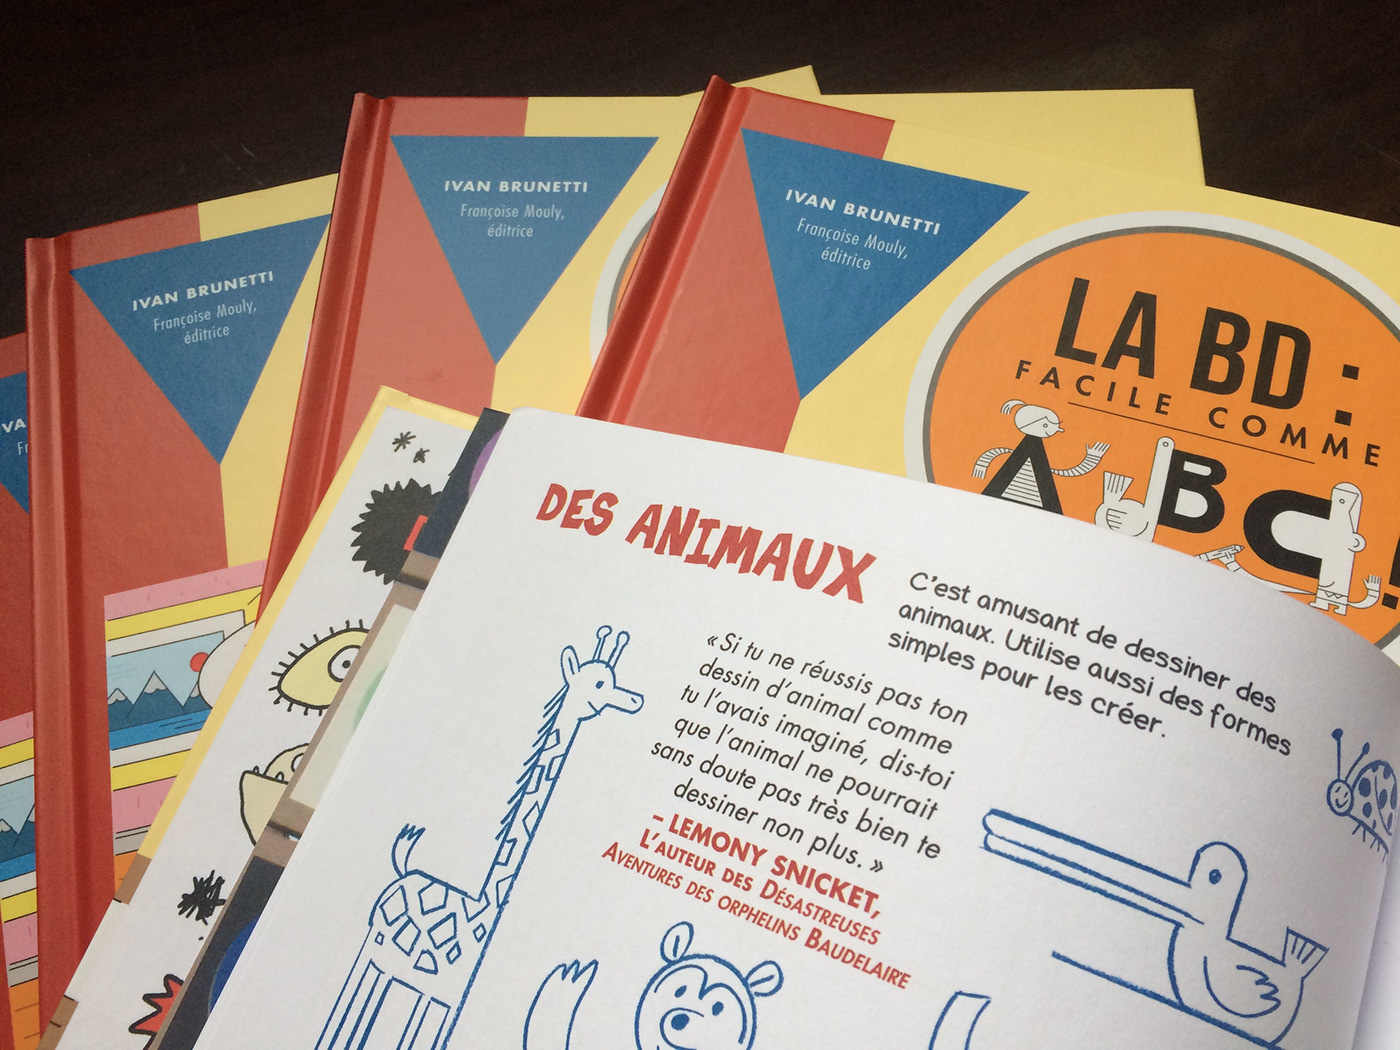 ABC album jeunesse bd comics Françoise Mouly ivan brunetti La Pastèque traduction translation